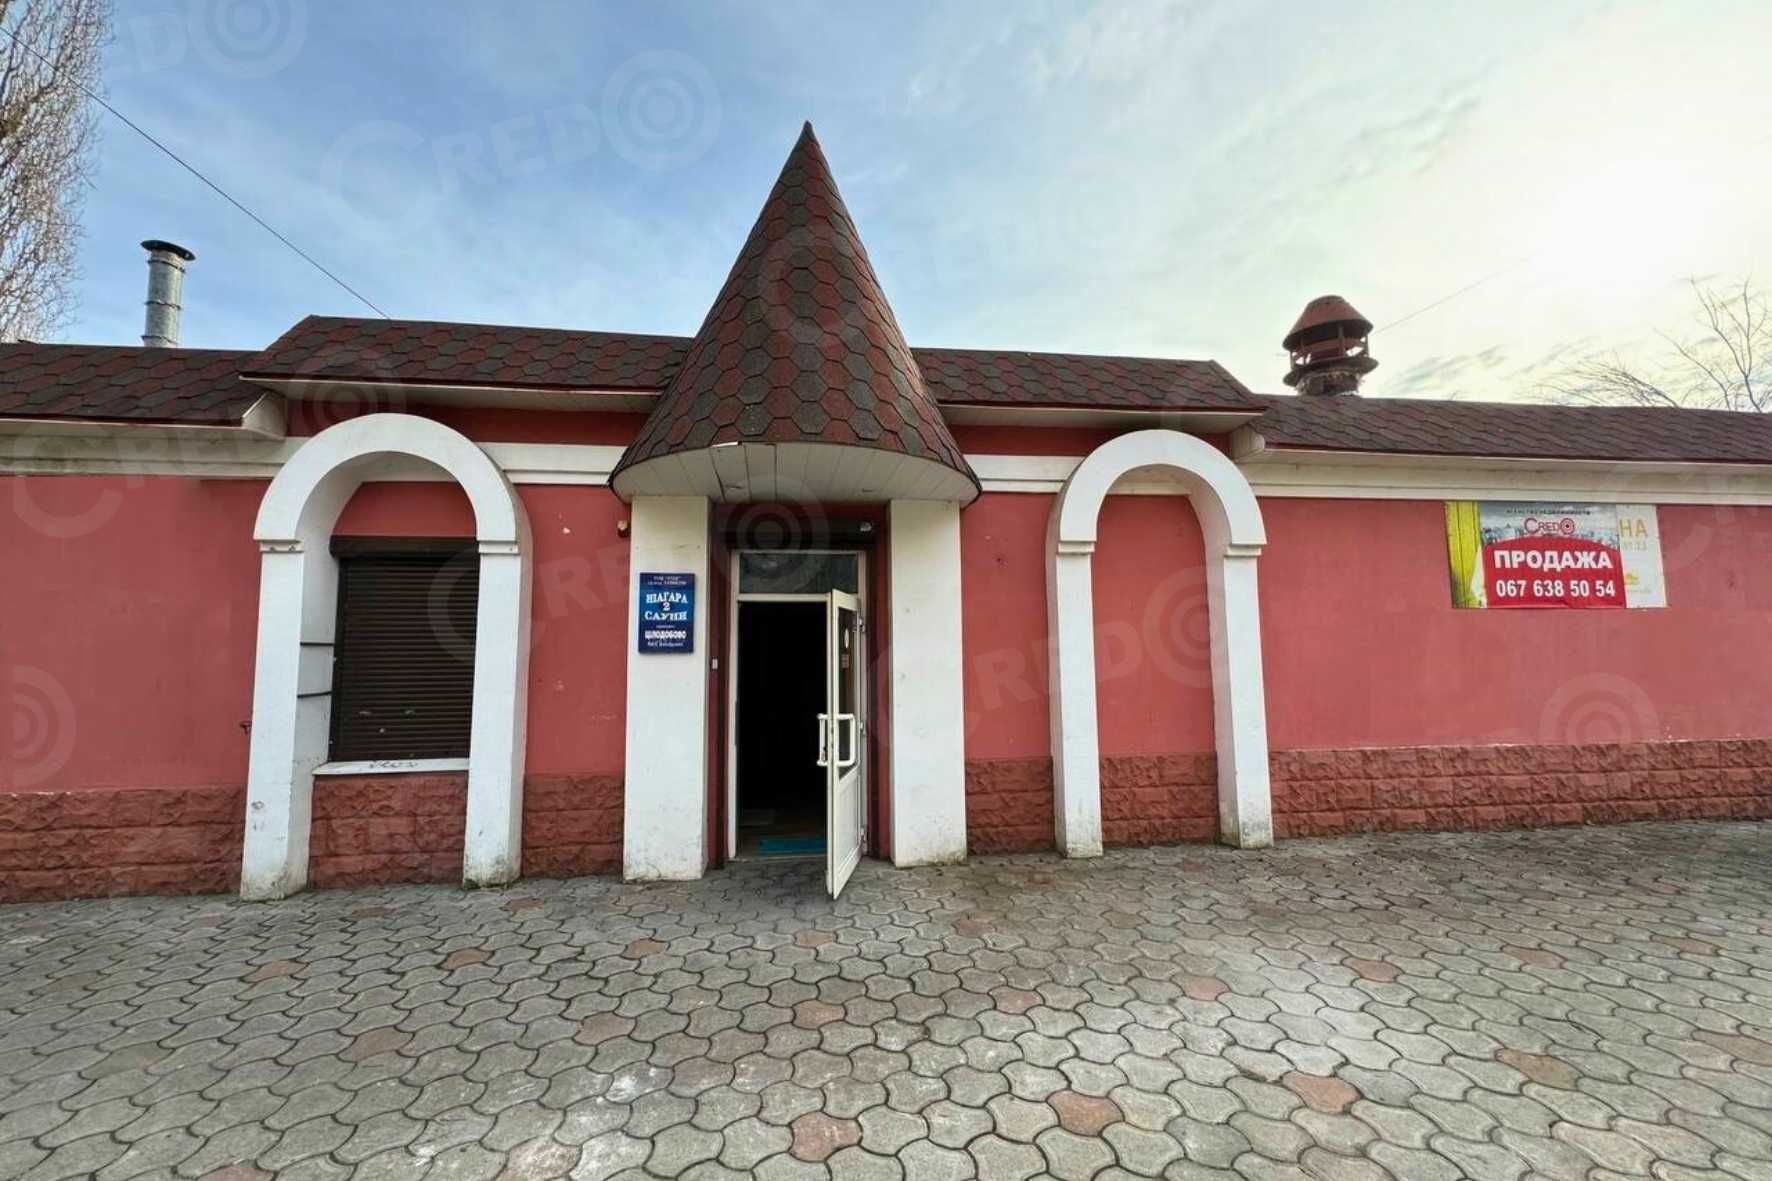 Продаж окремої будівлі на "Ластівці", вул. Котляревського